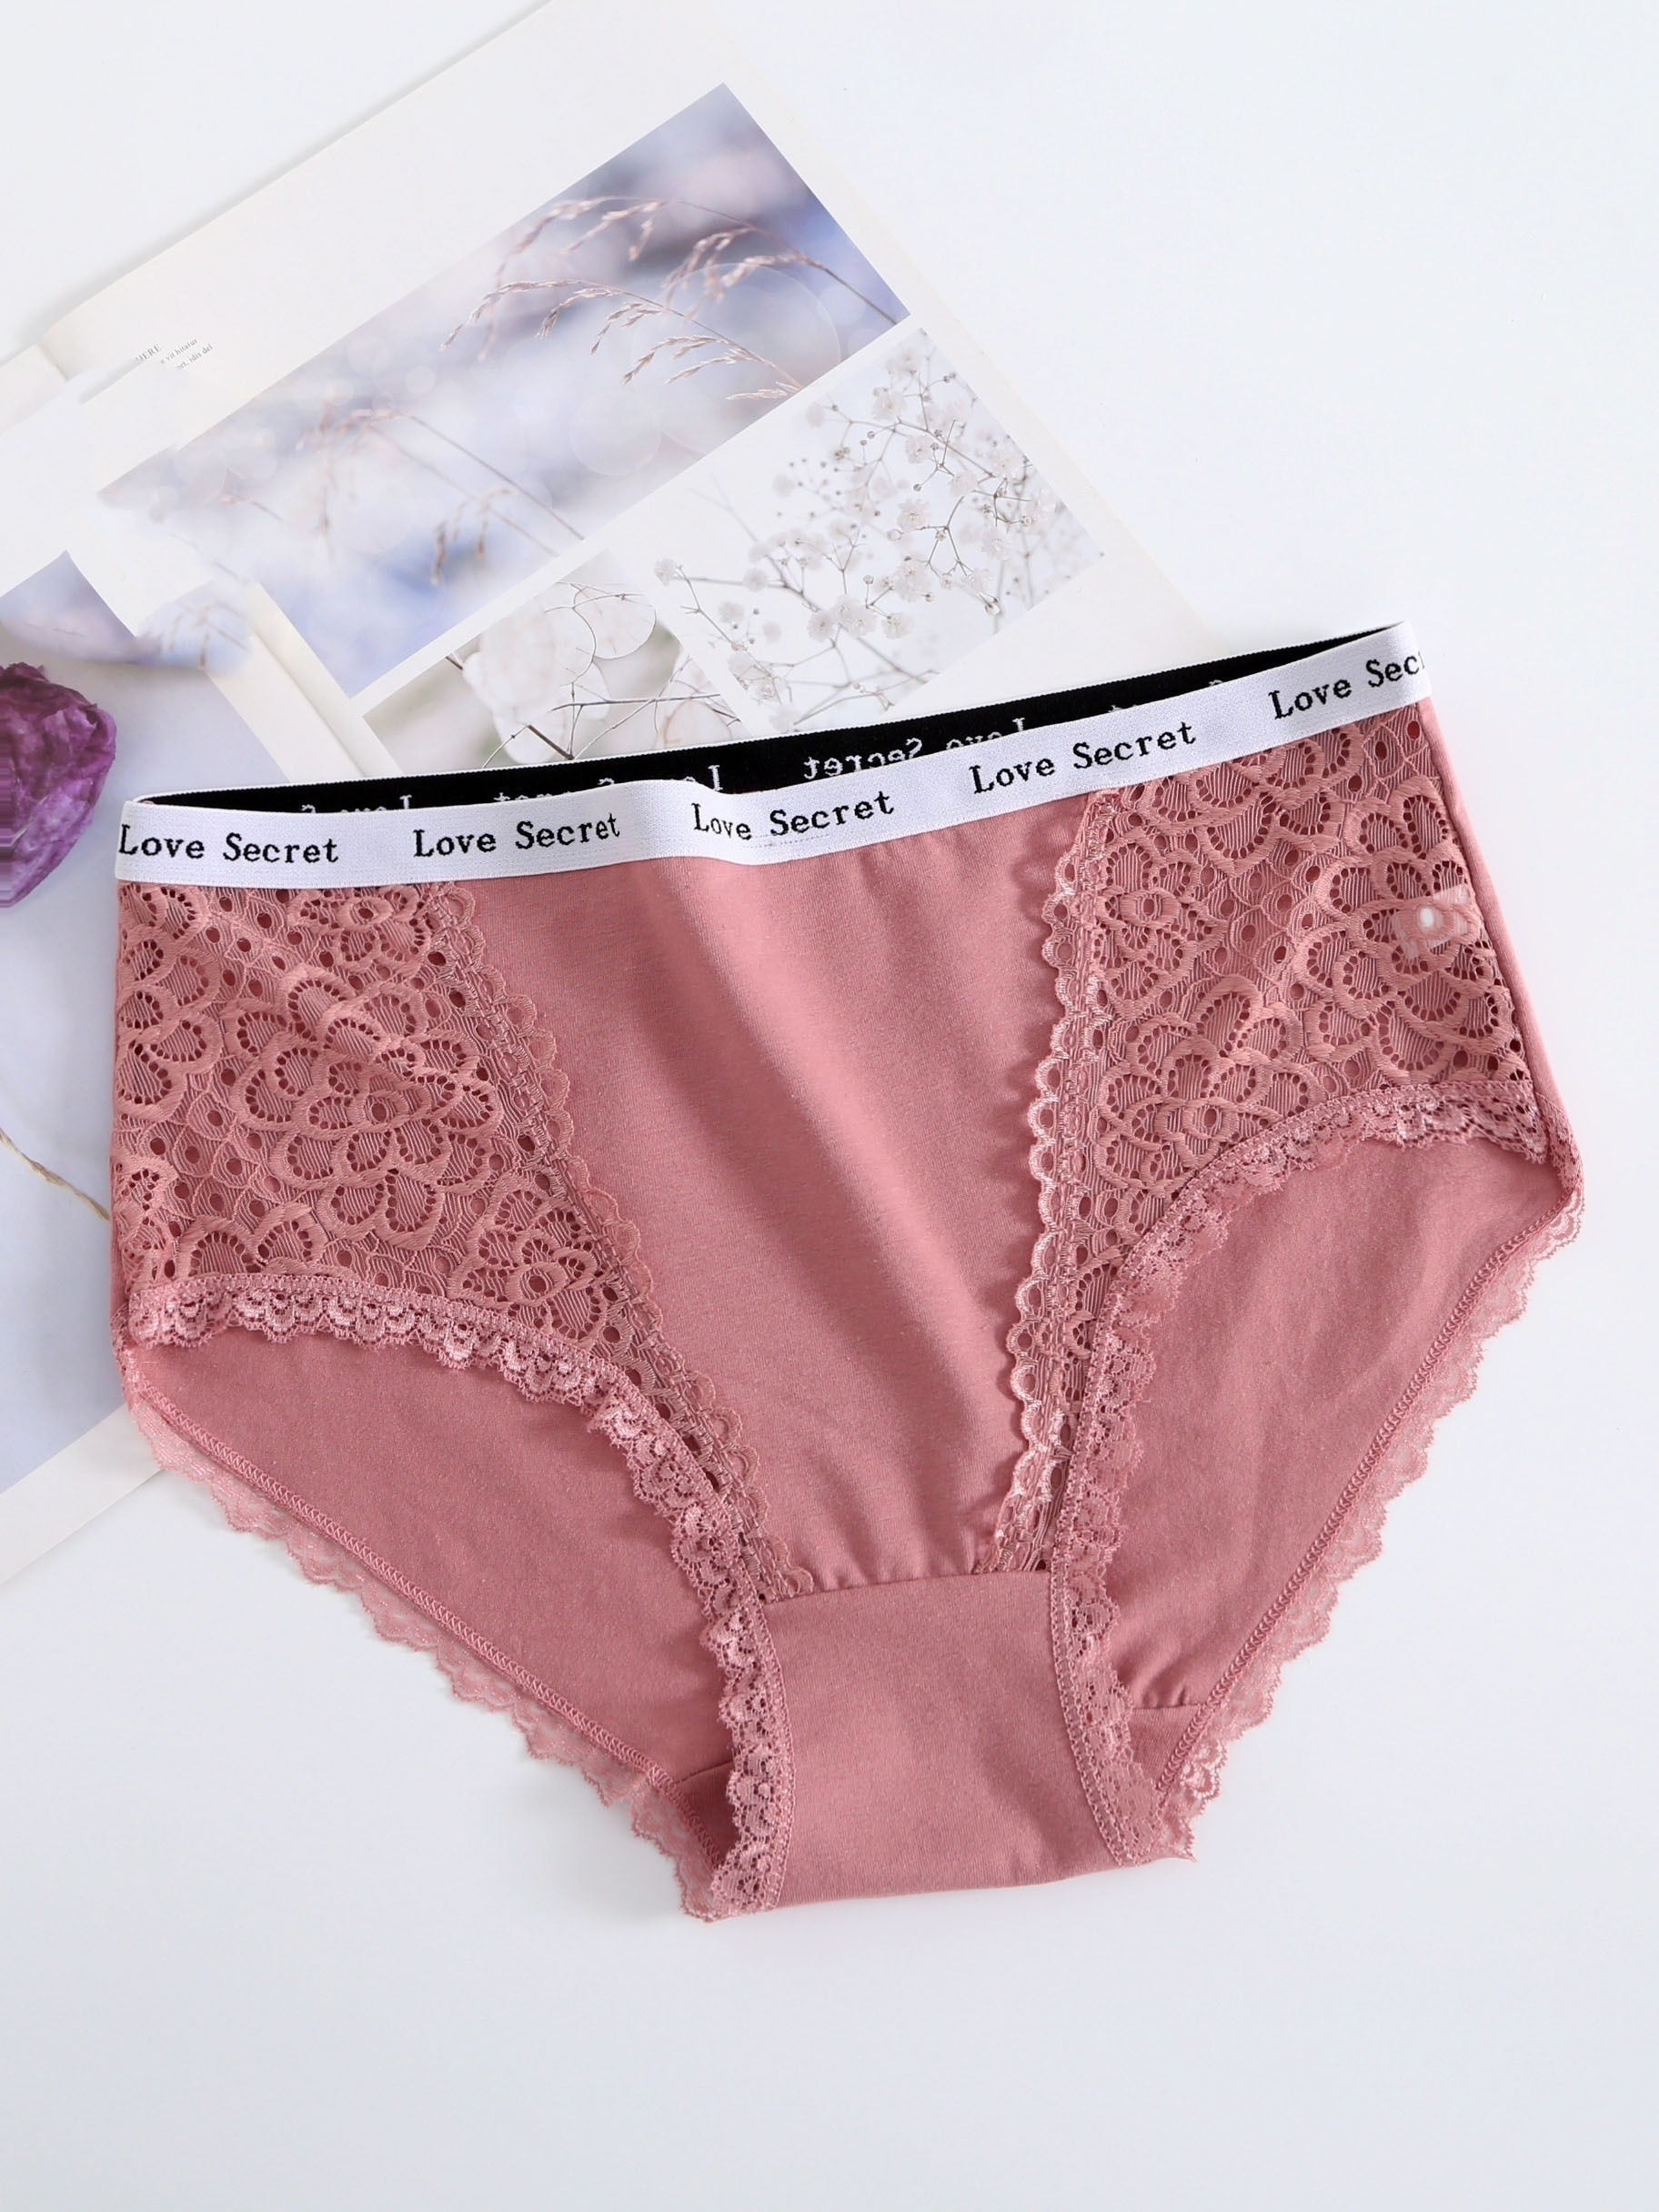 6pack Contrast Lace Panty Set Lingerie